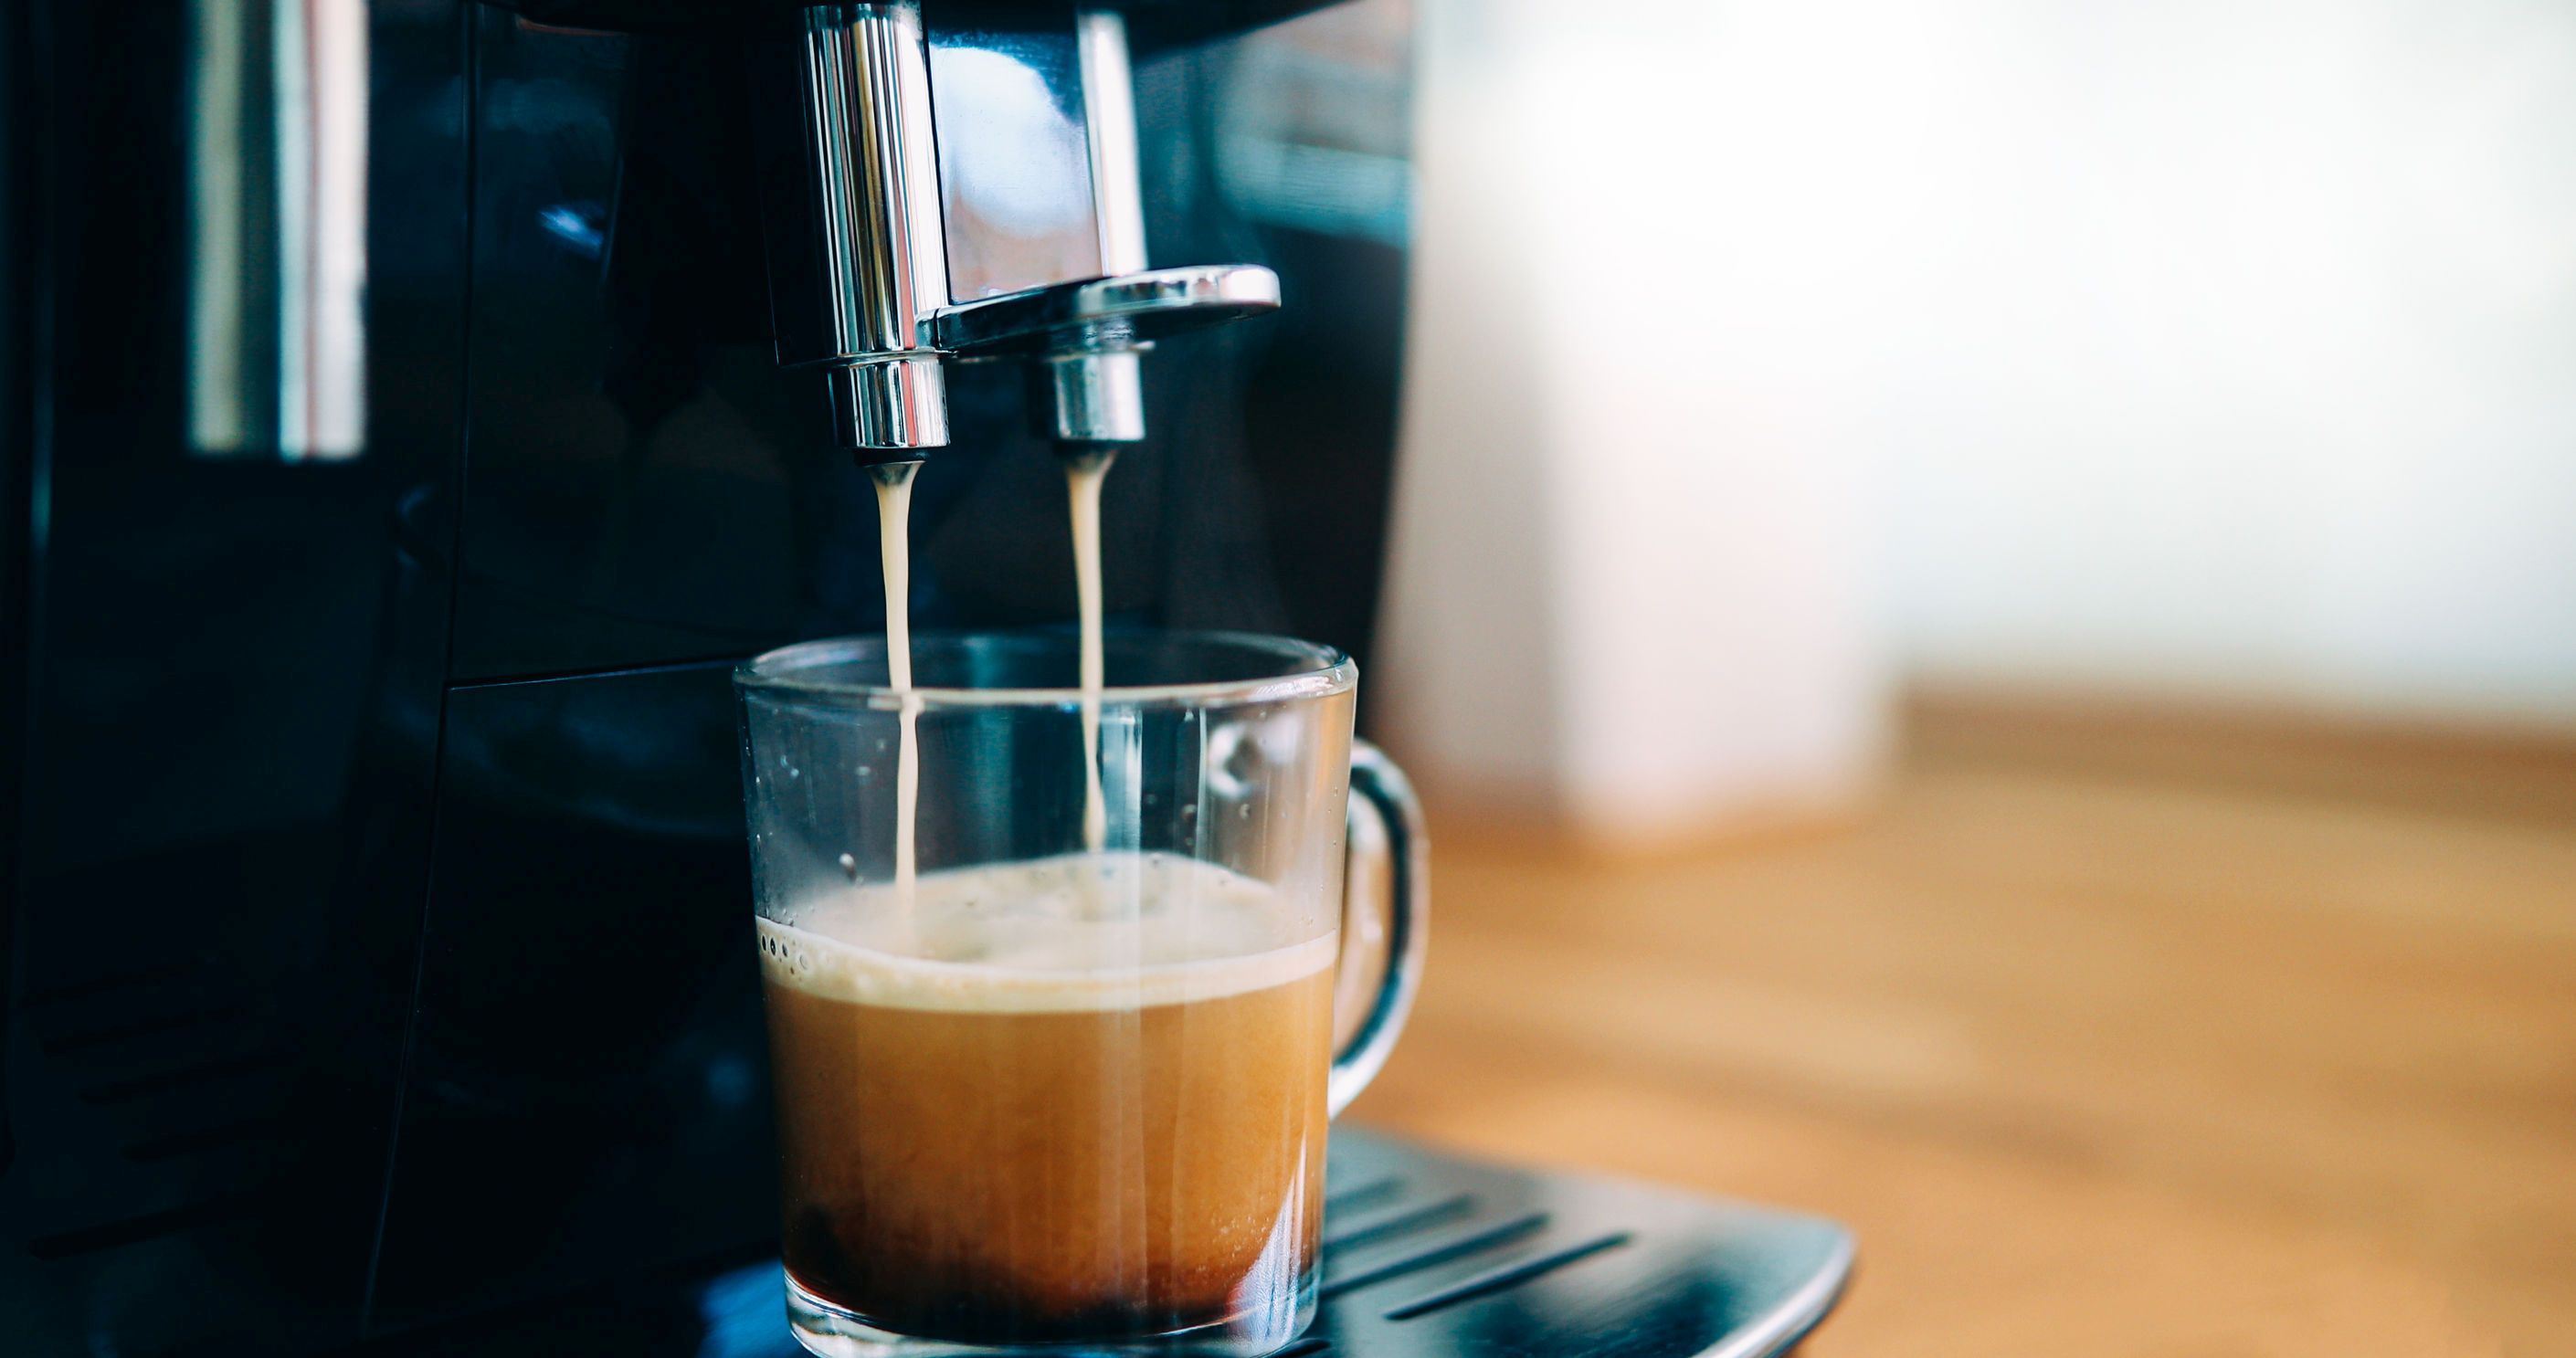 Studiu: Majoritatea aparatelor de cafea sunt pline de bacterii şi mucegai